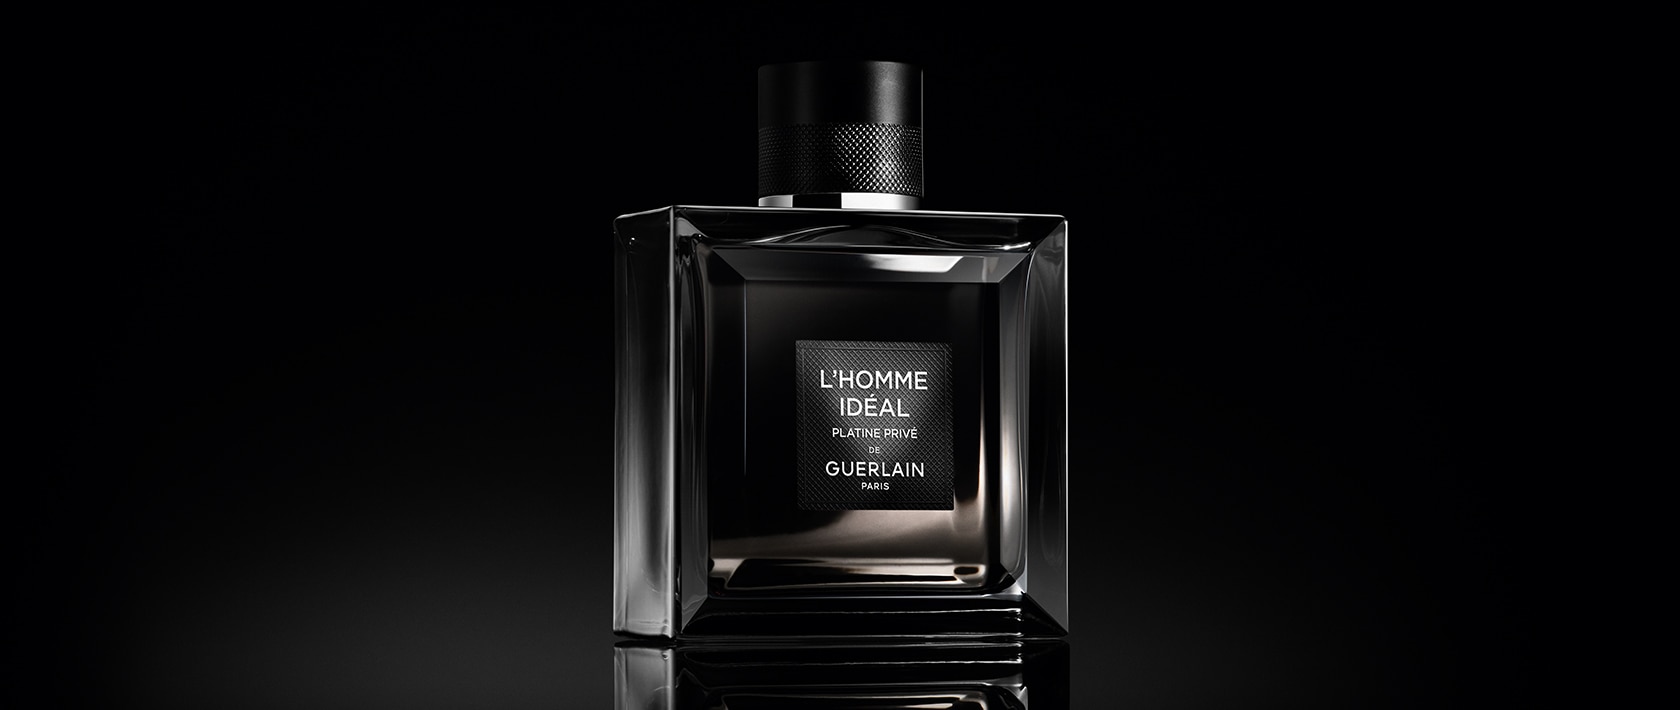 Men's Fragrance & Aftershave, Men's Perfume